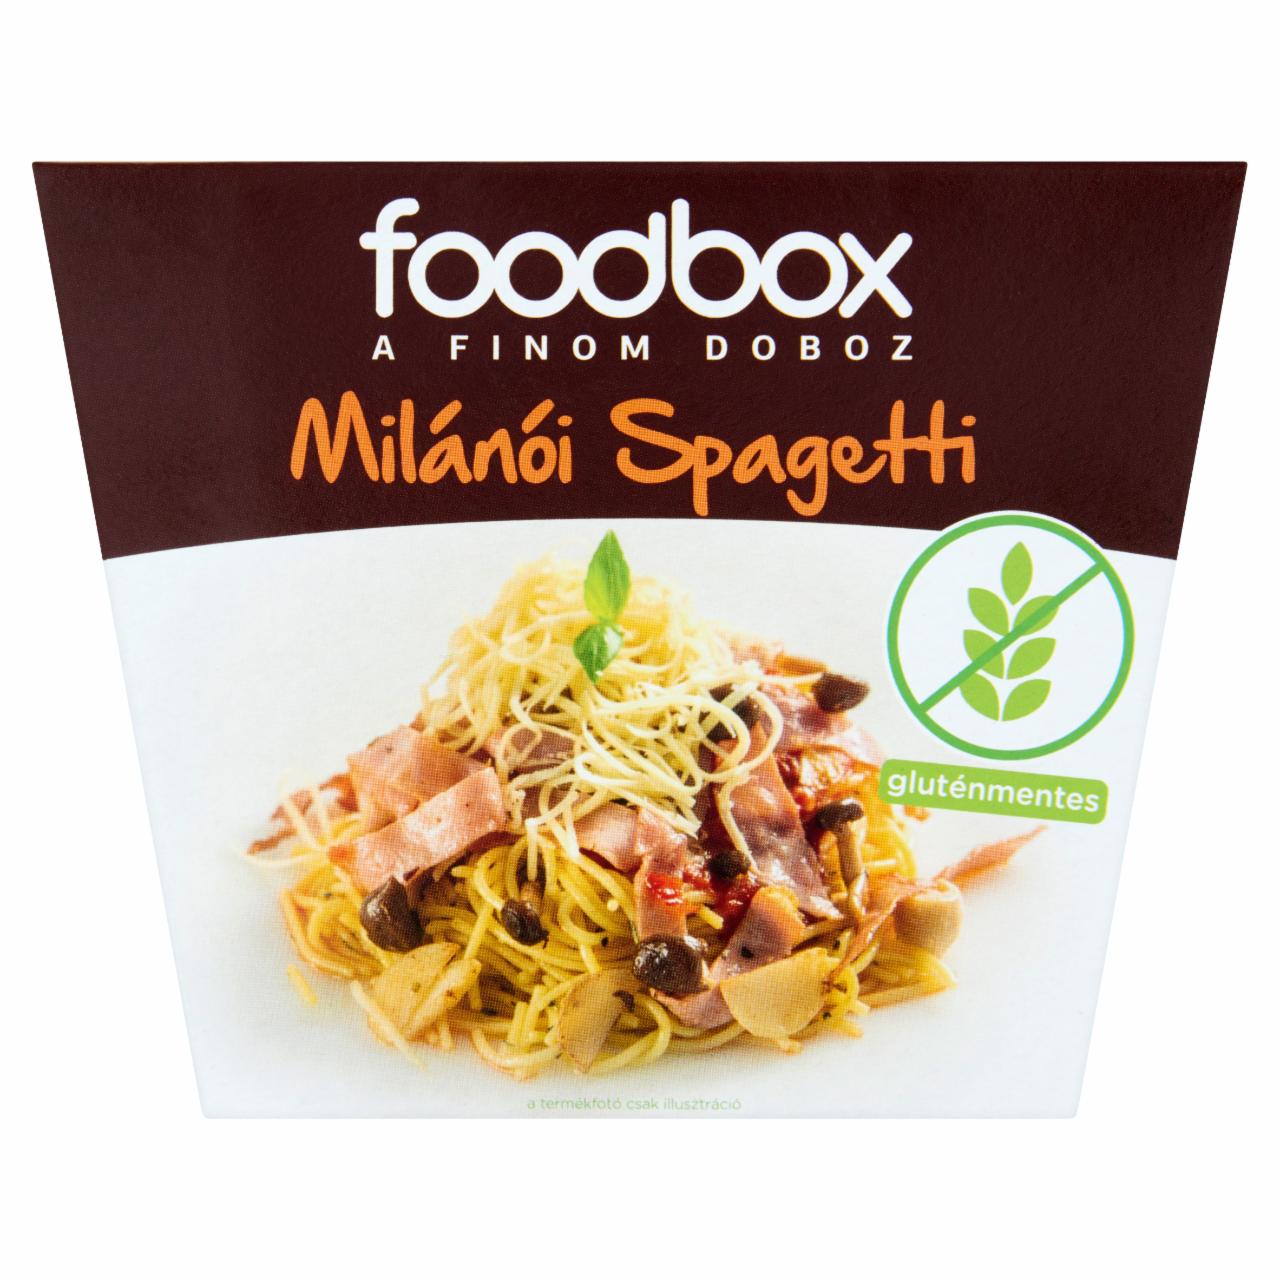 Képek - Foodbox milánói spagetti 330 g